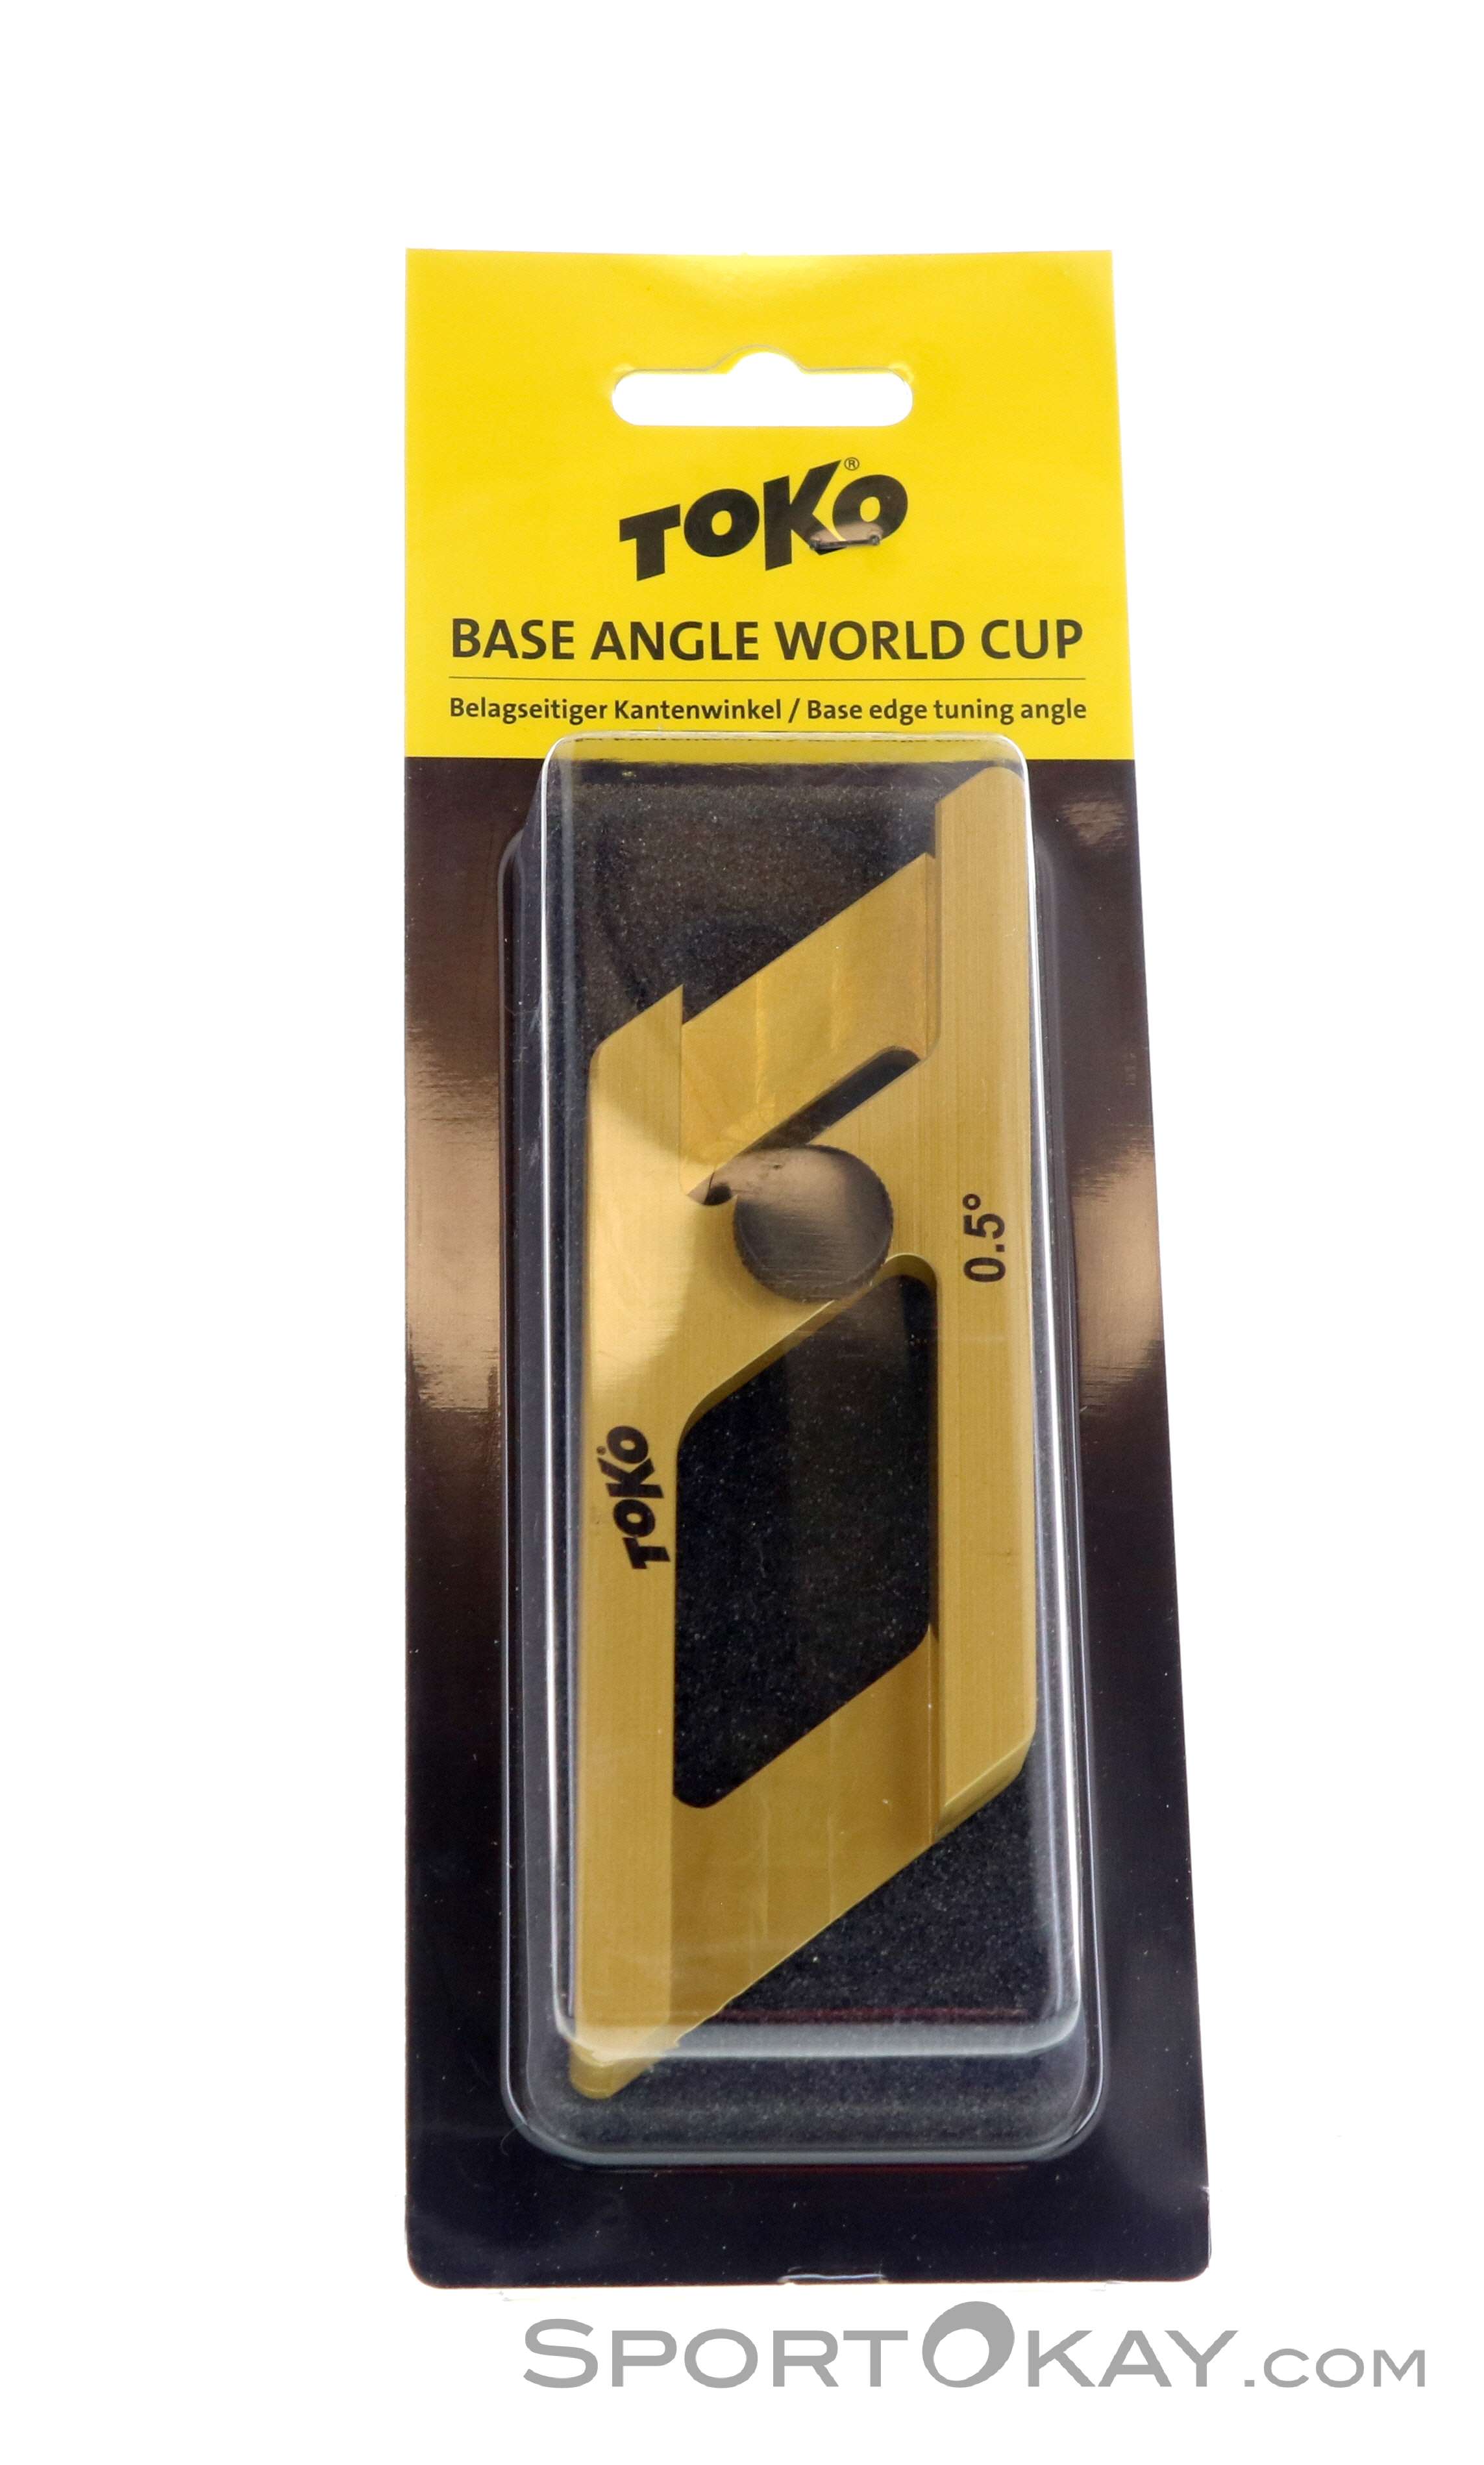 Toko Base Angle World Cup 